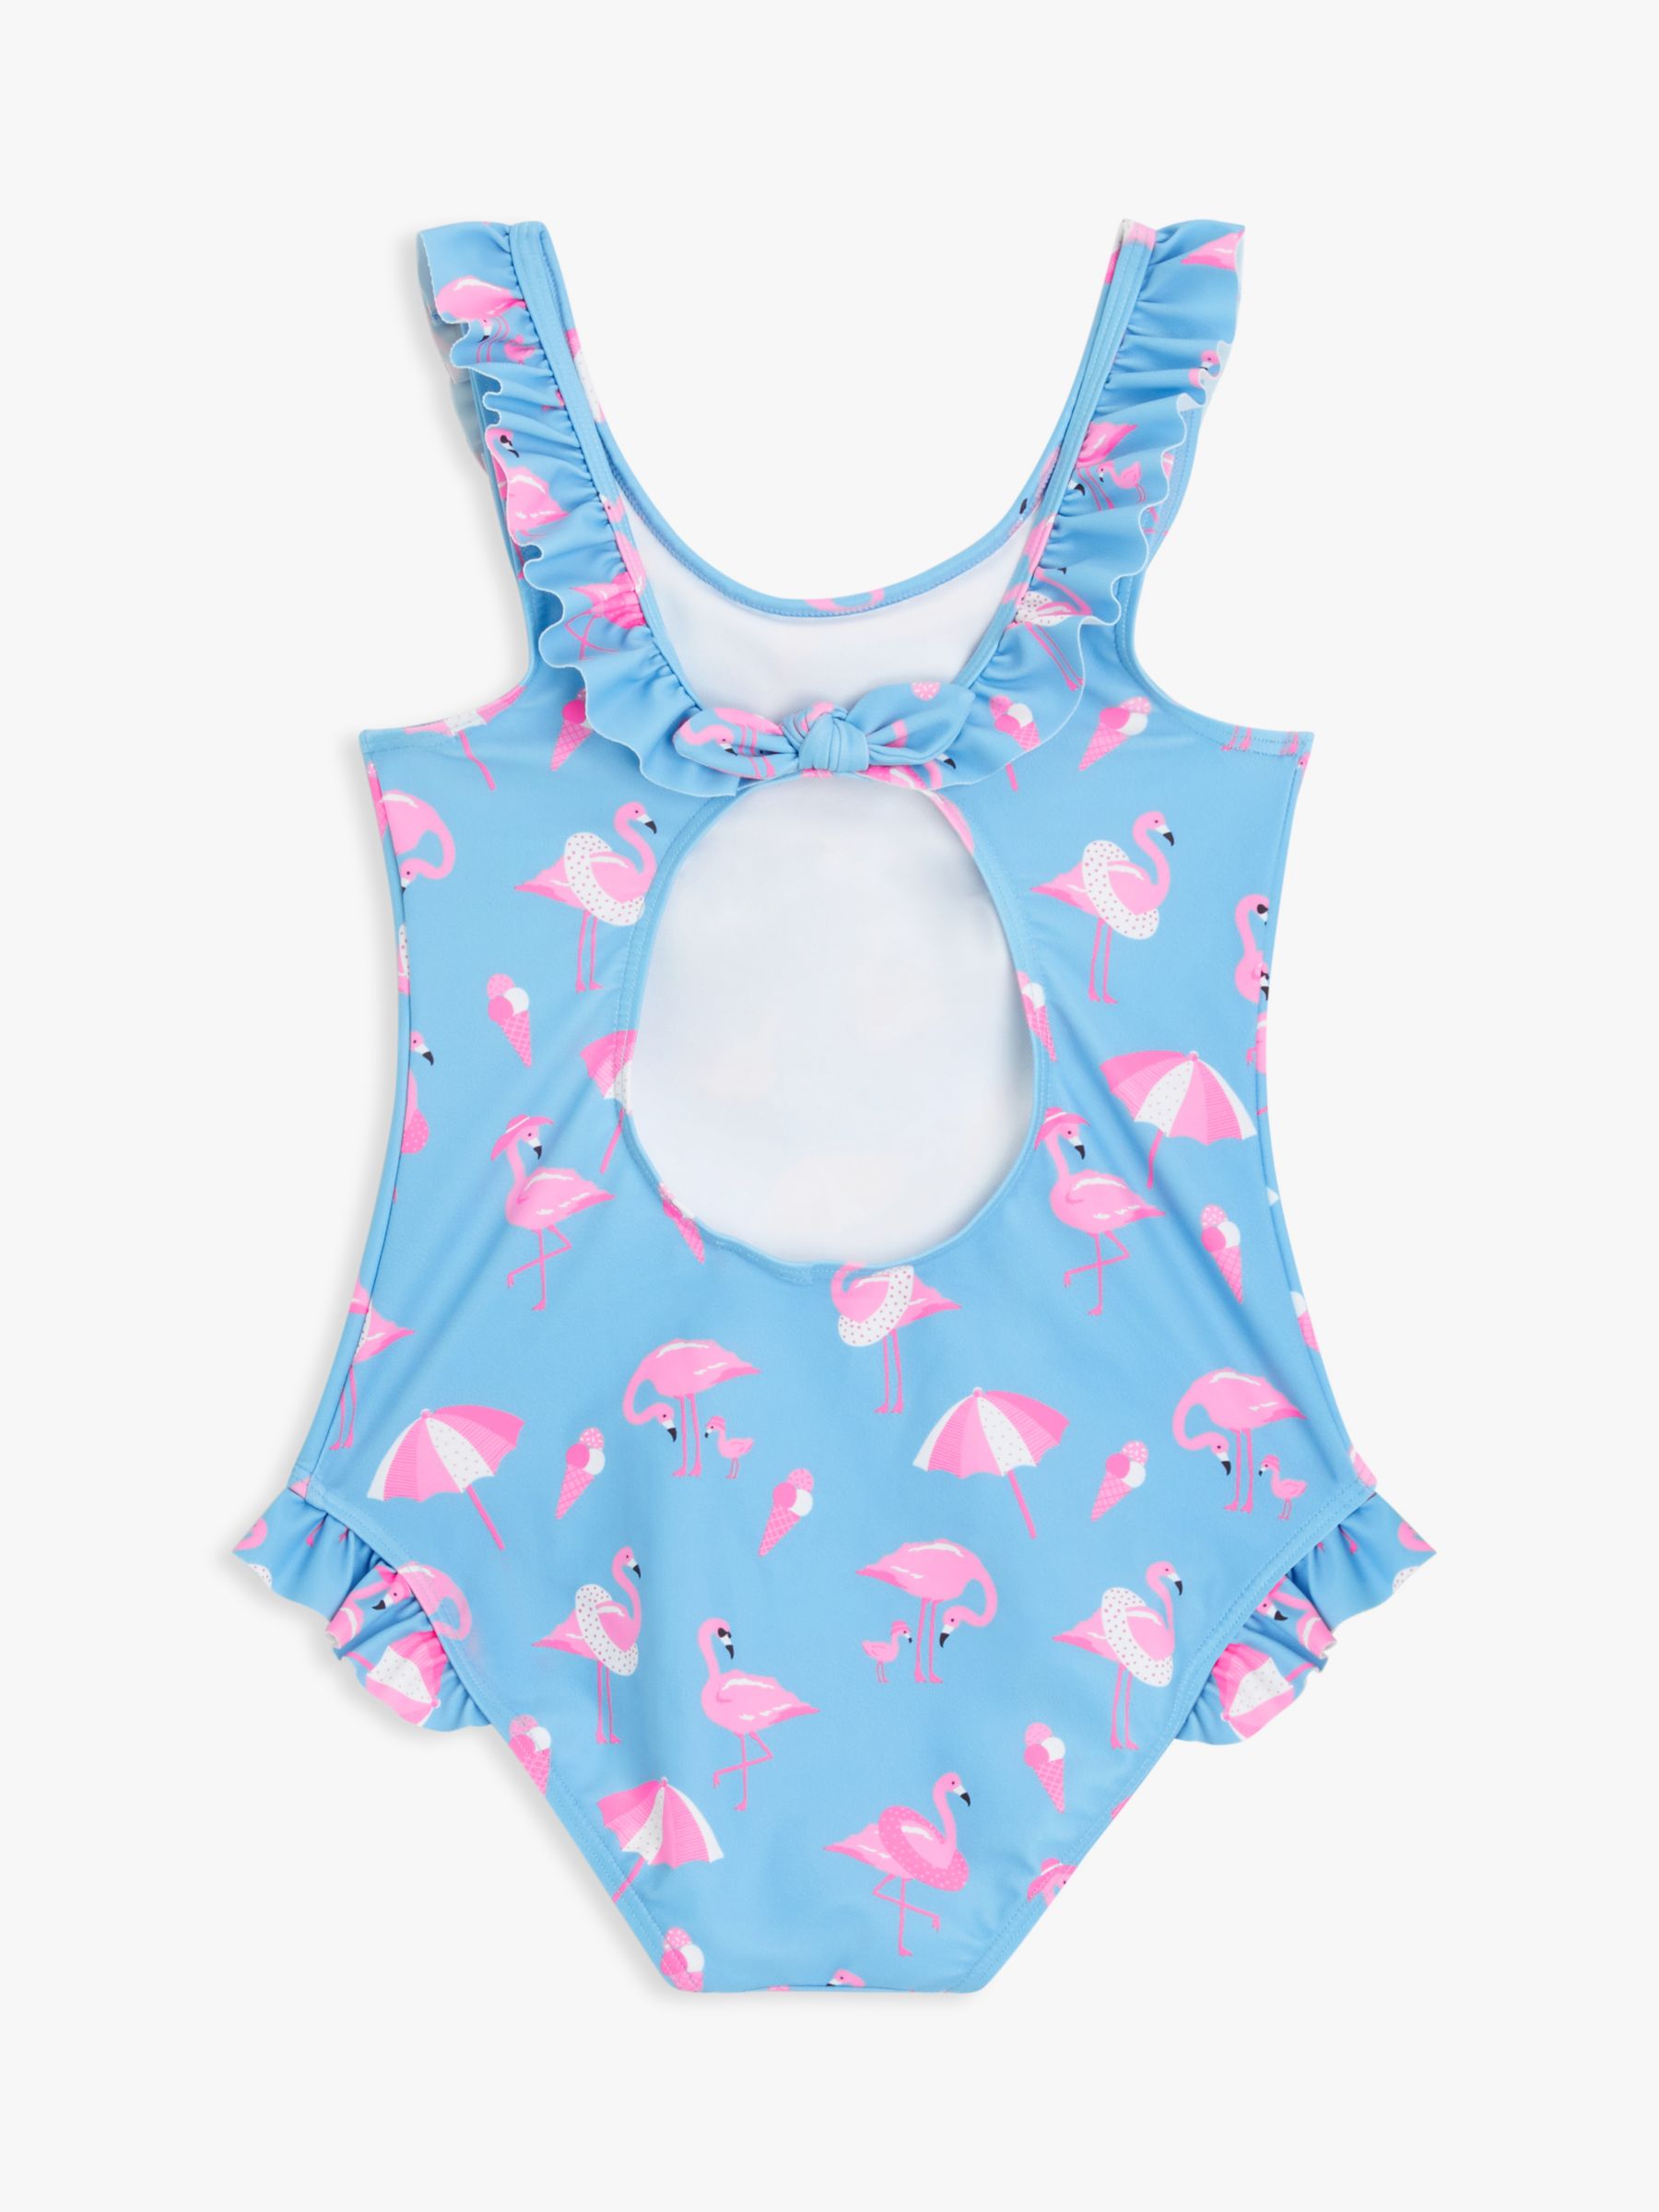 John Lewis Kids' Fun Flamingo Swimsuit, Blue/Pink at John Lewis & Partners